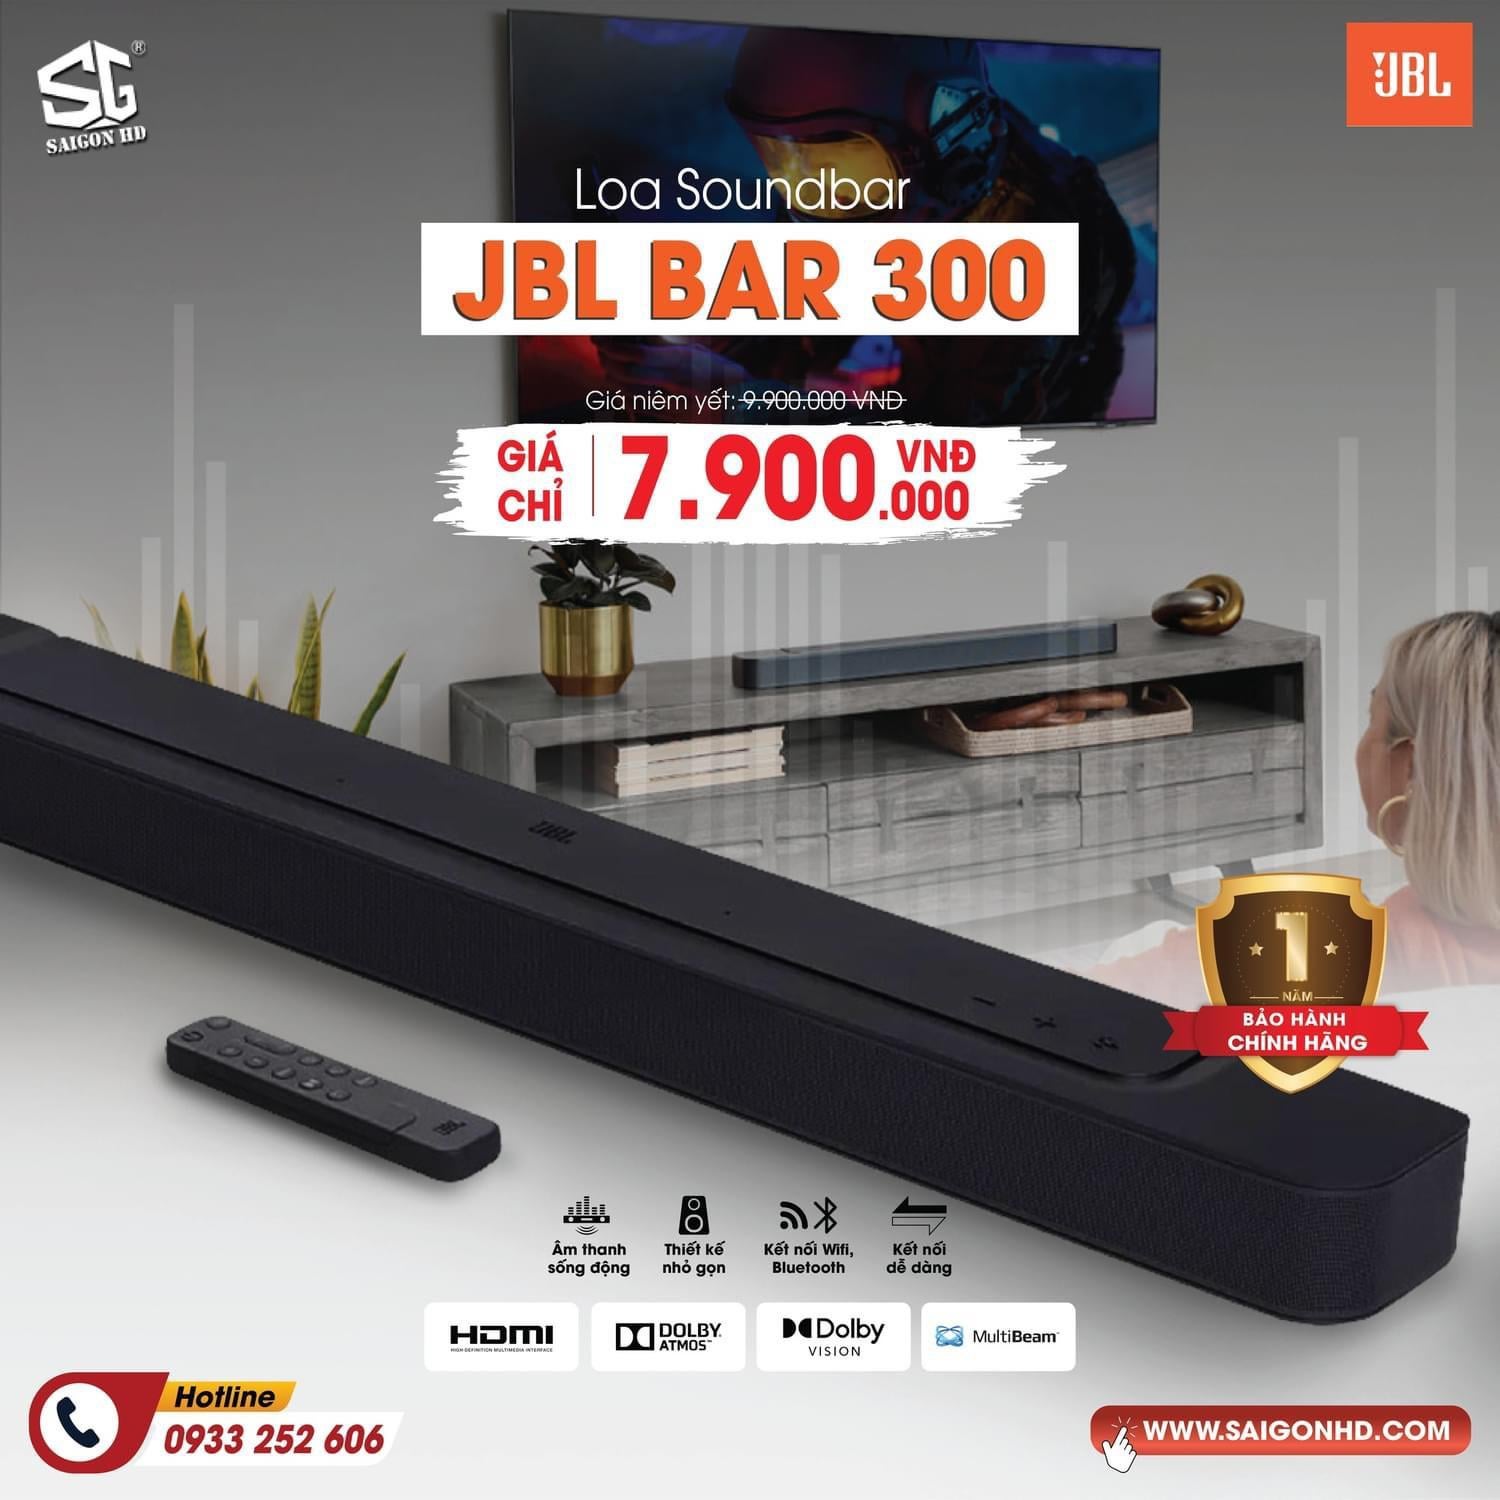 u/Jonhsghd - Mua JBL Bar 300 Tại SAIGON HD